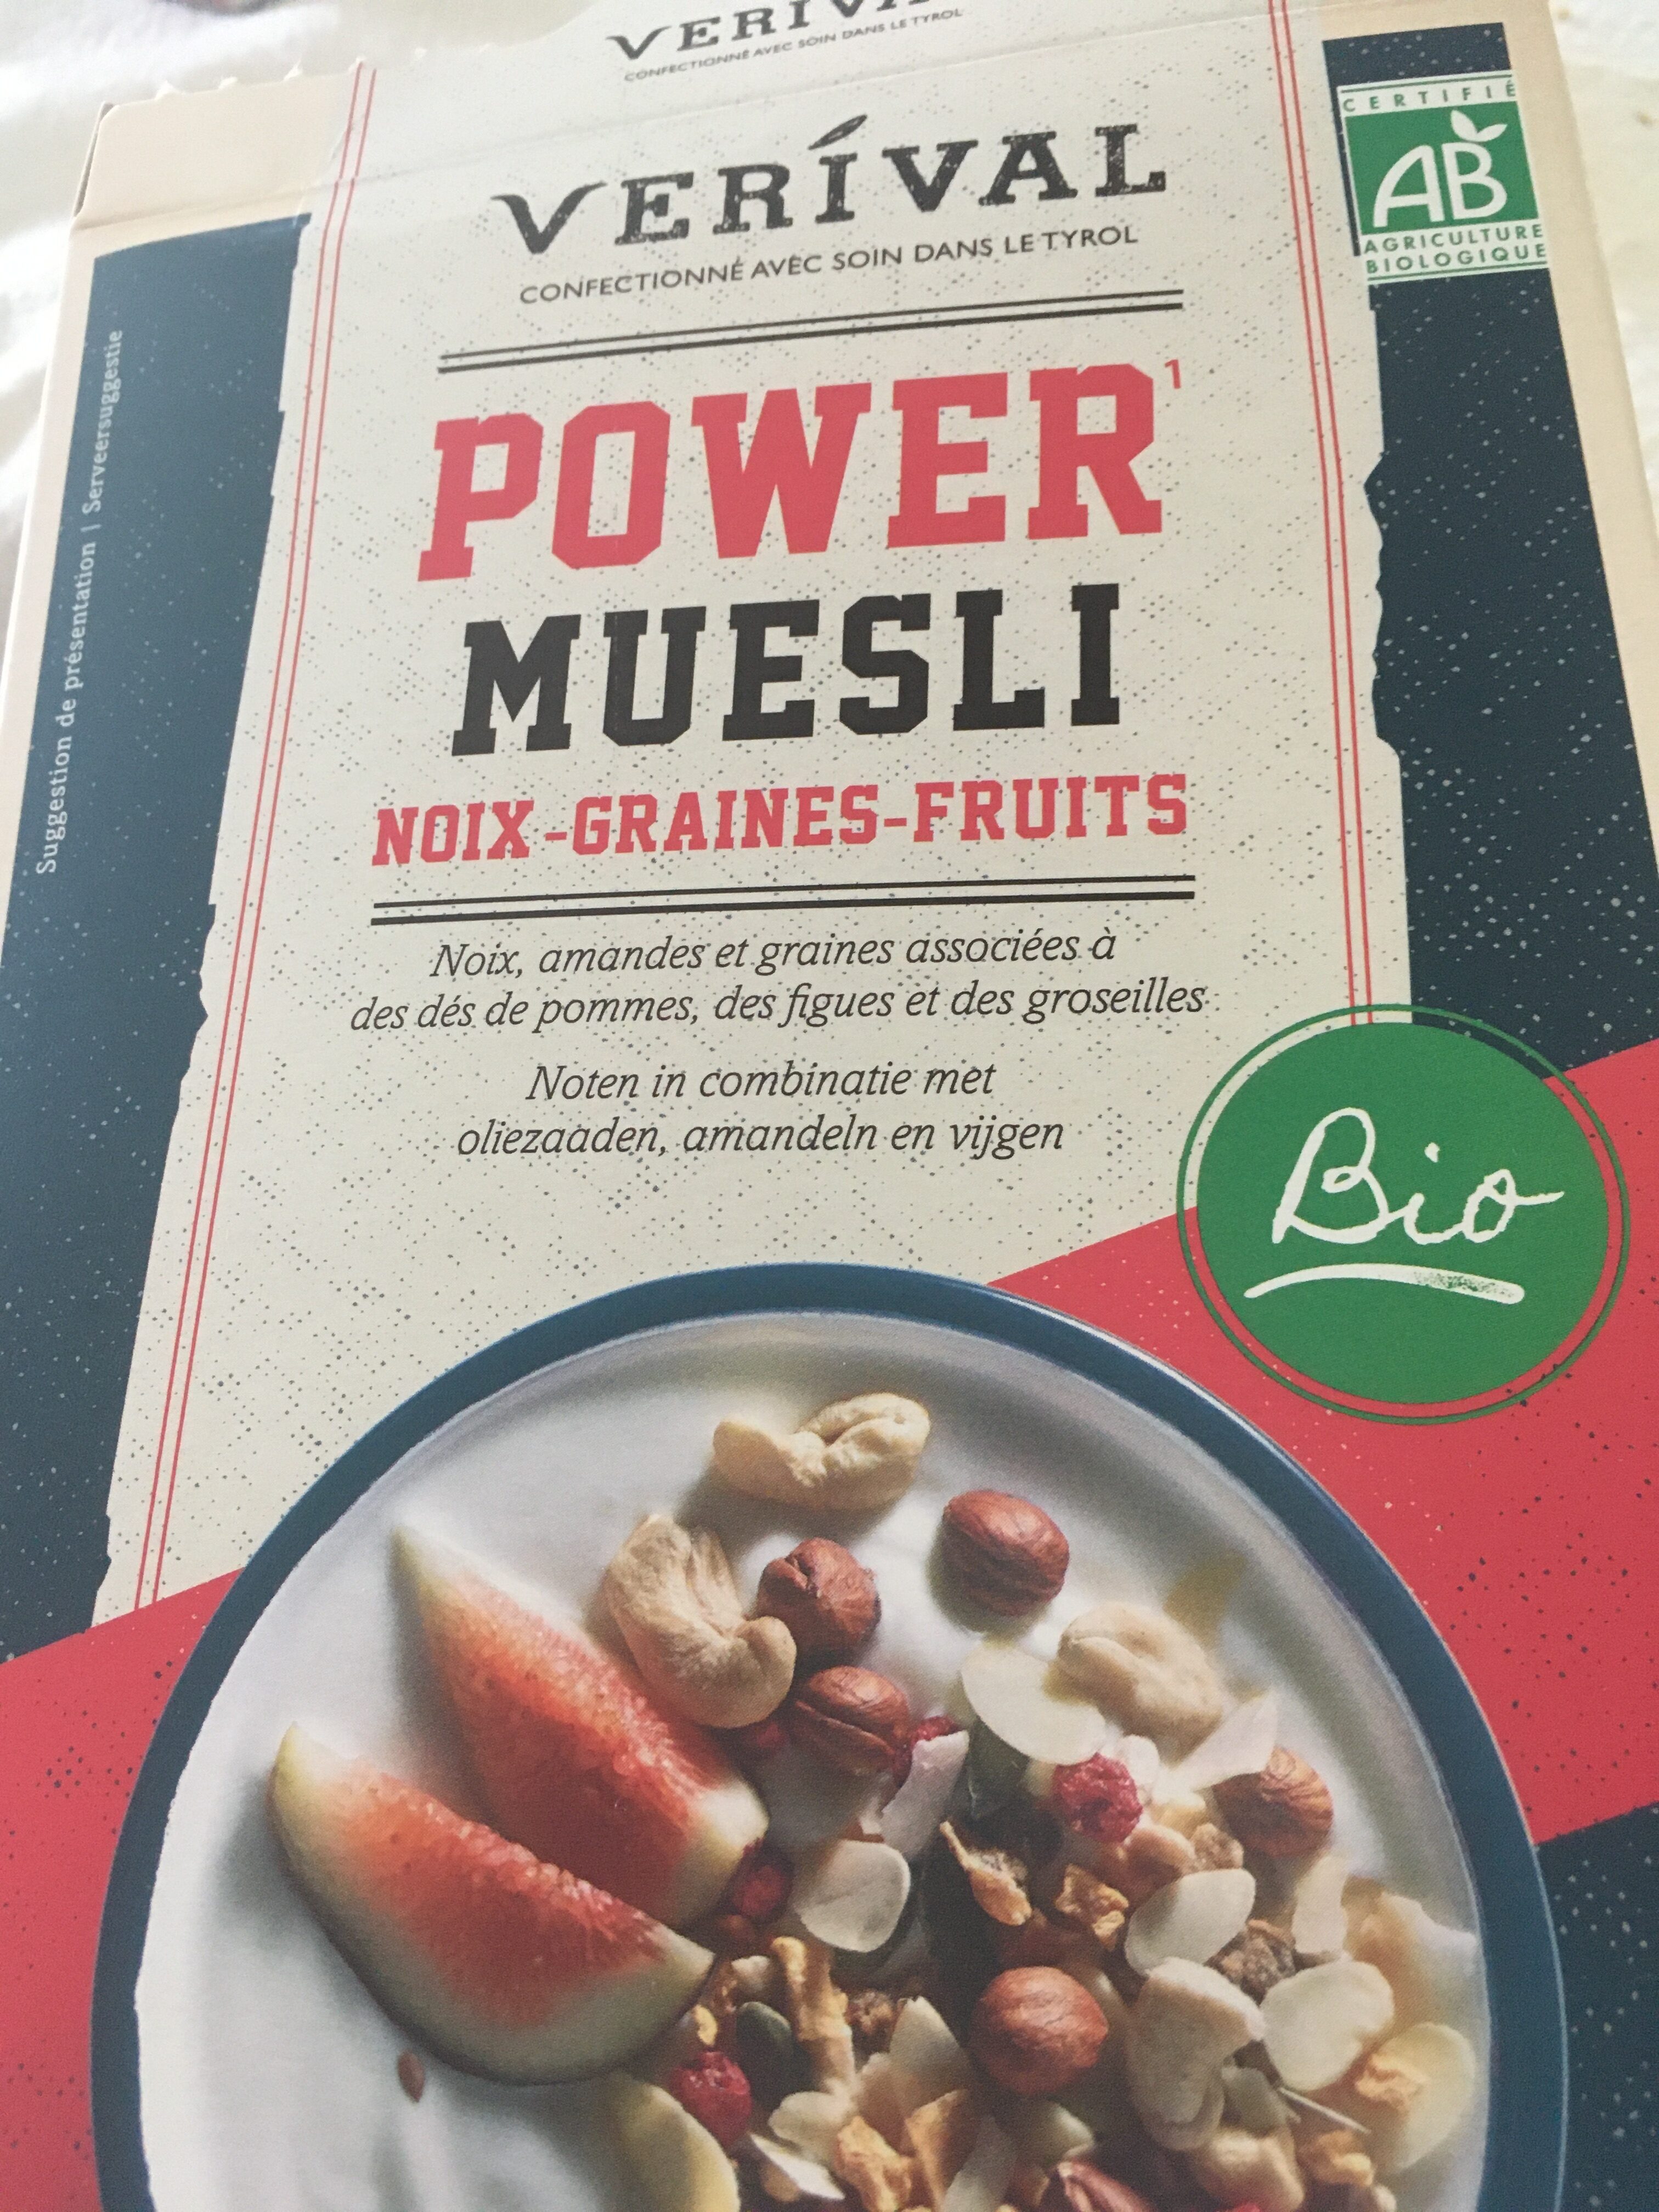 Power Muesli noix-graines-fruits - Ingredienser - fr